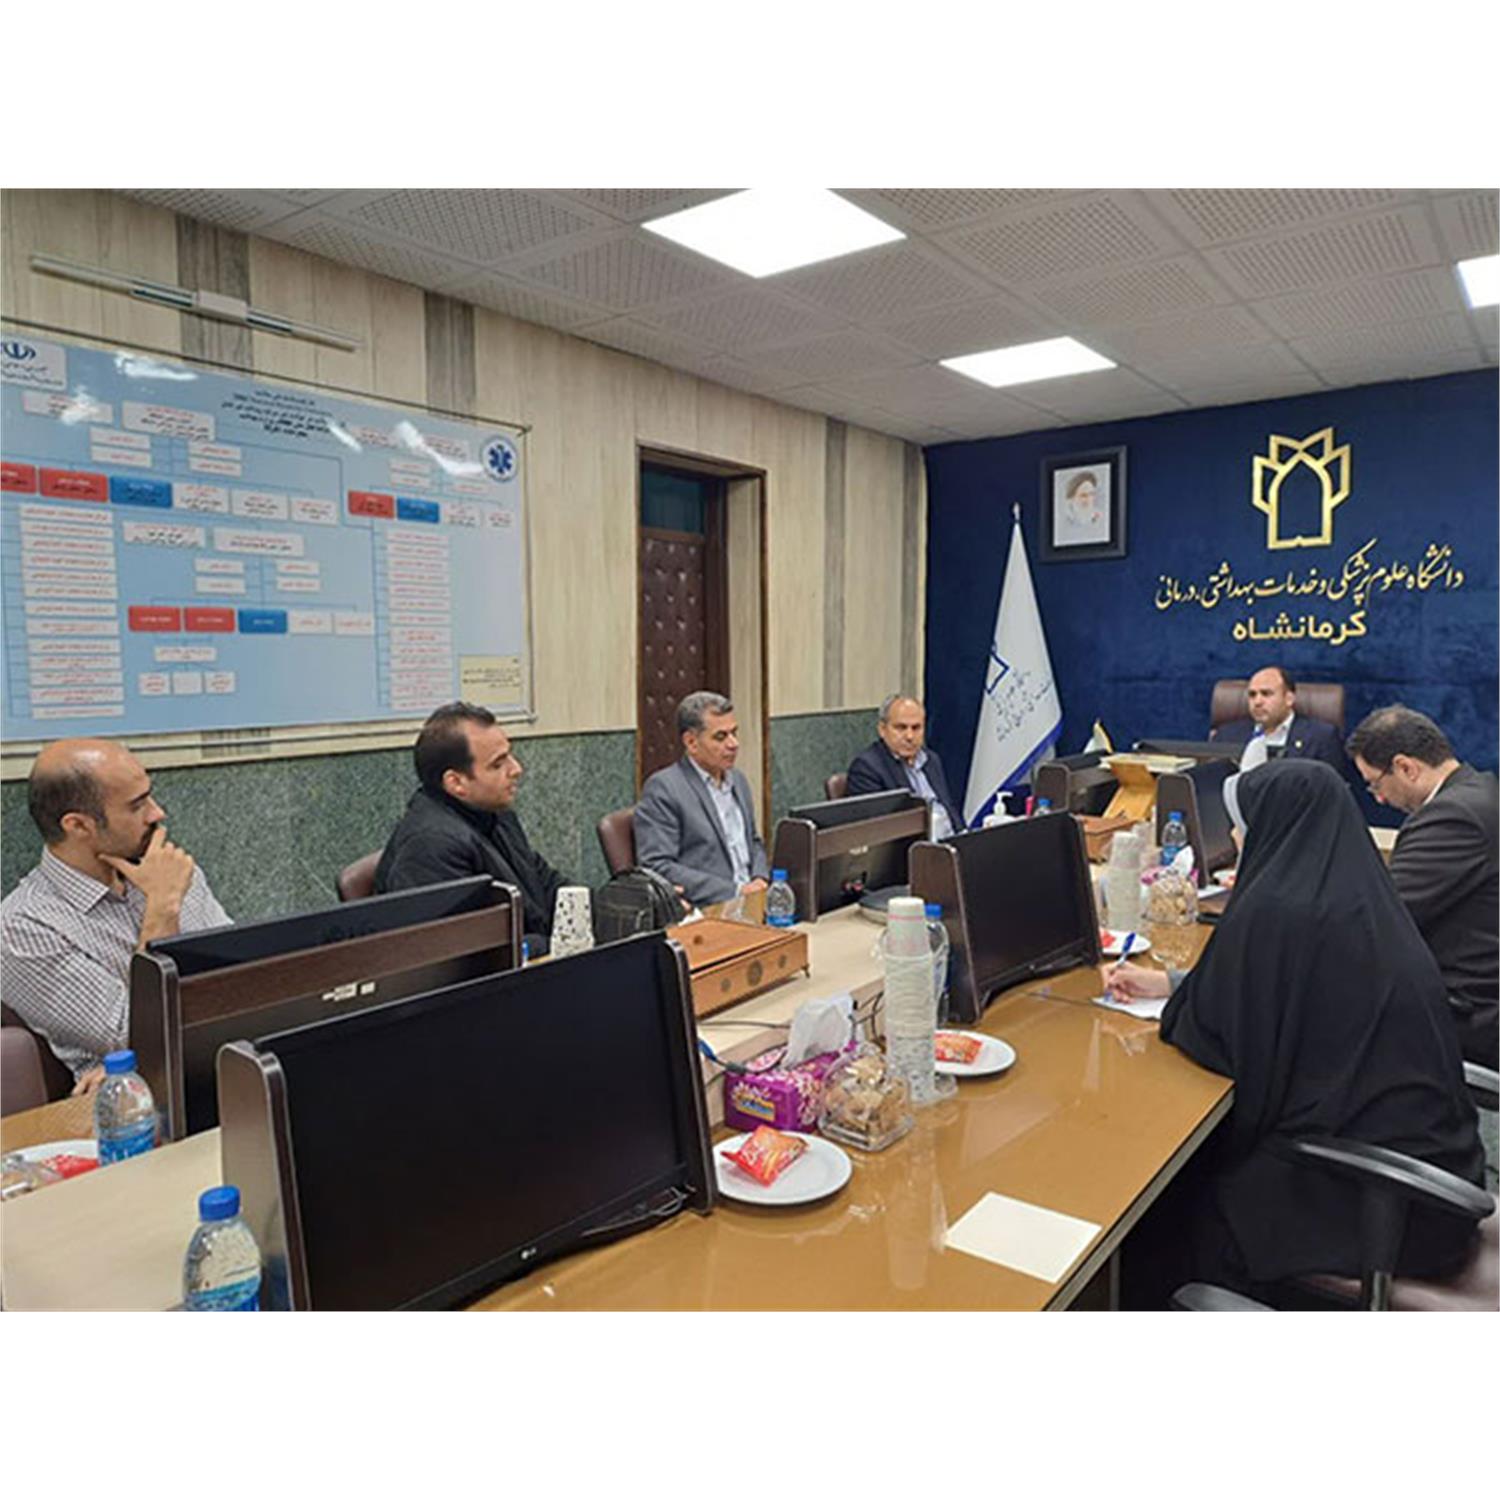 جلسه کمیته امنیت اطلاعات دانشگاه